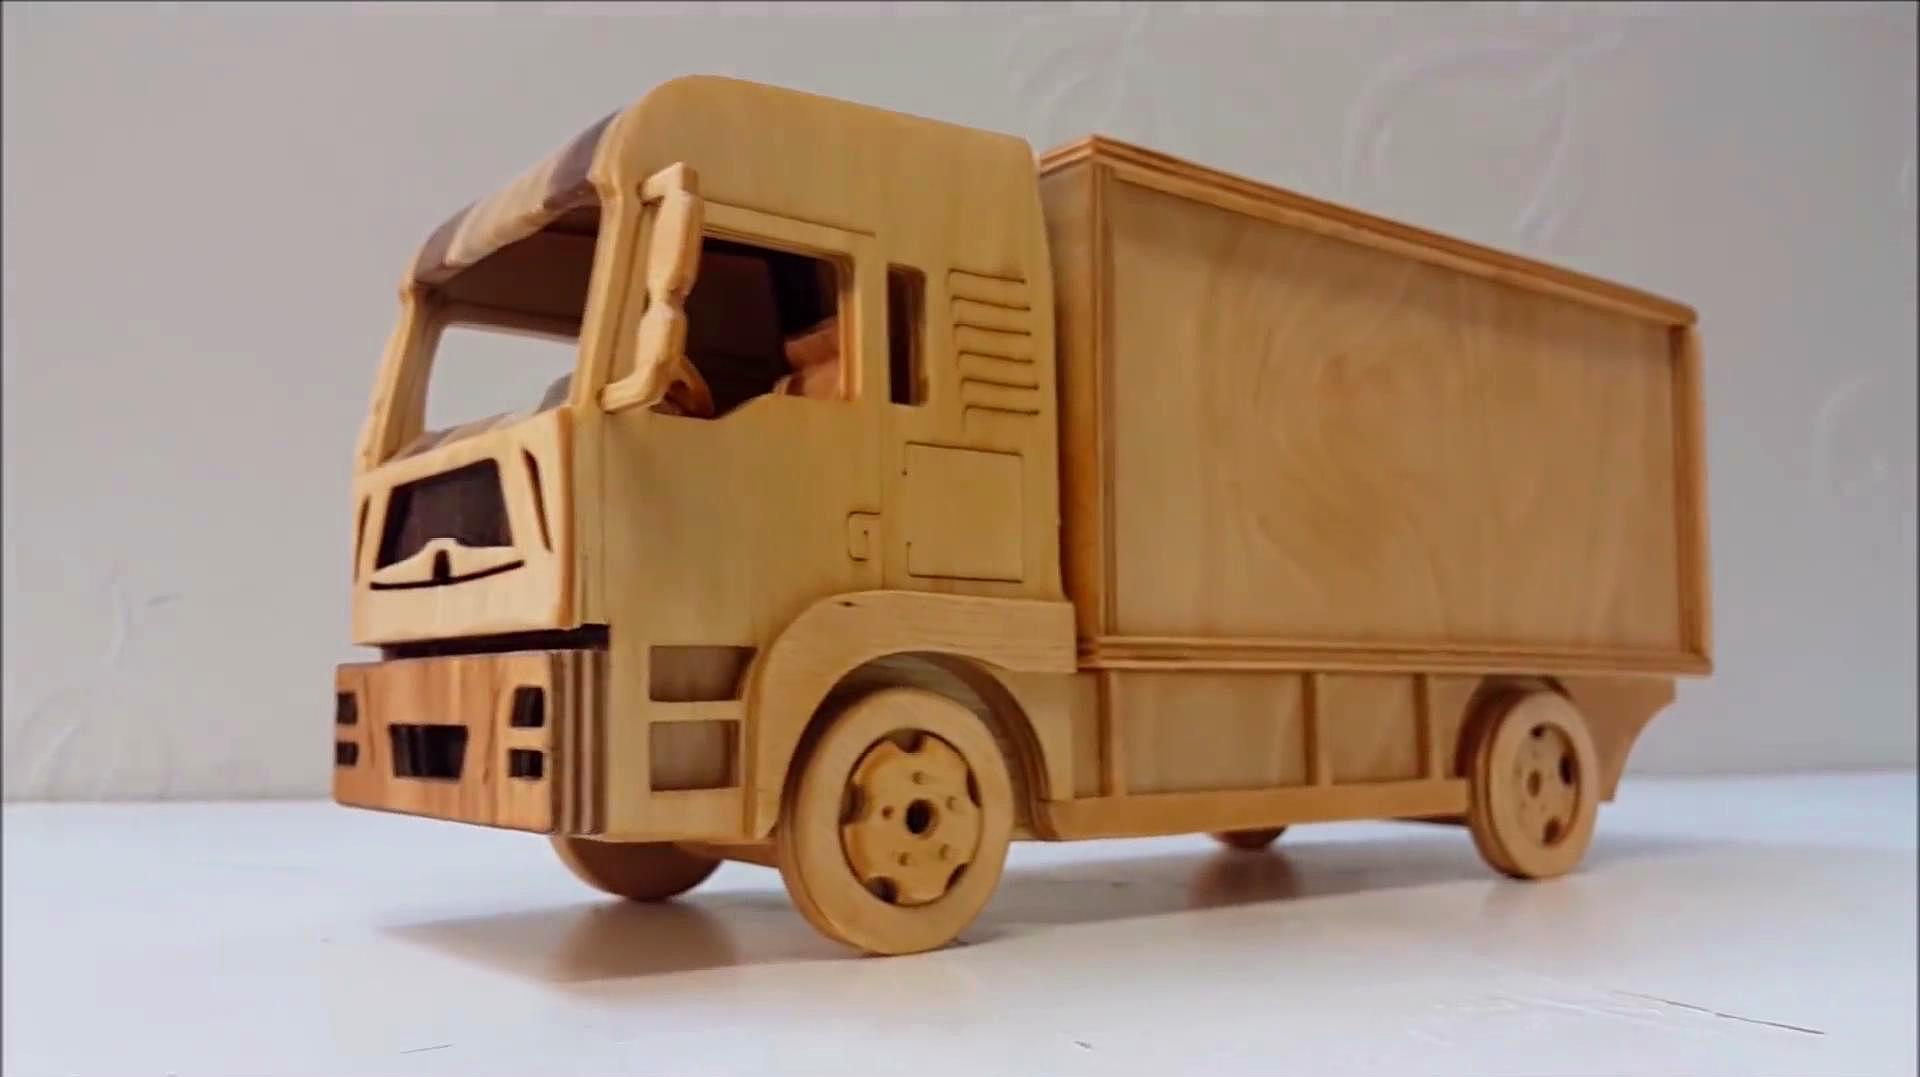 手工牛人用木板制作重型卡车玩具模型,完成后太美了像艺术品